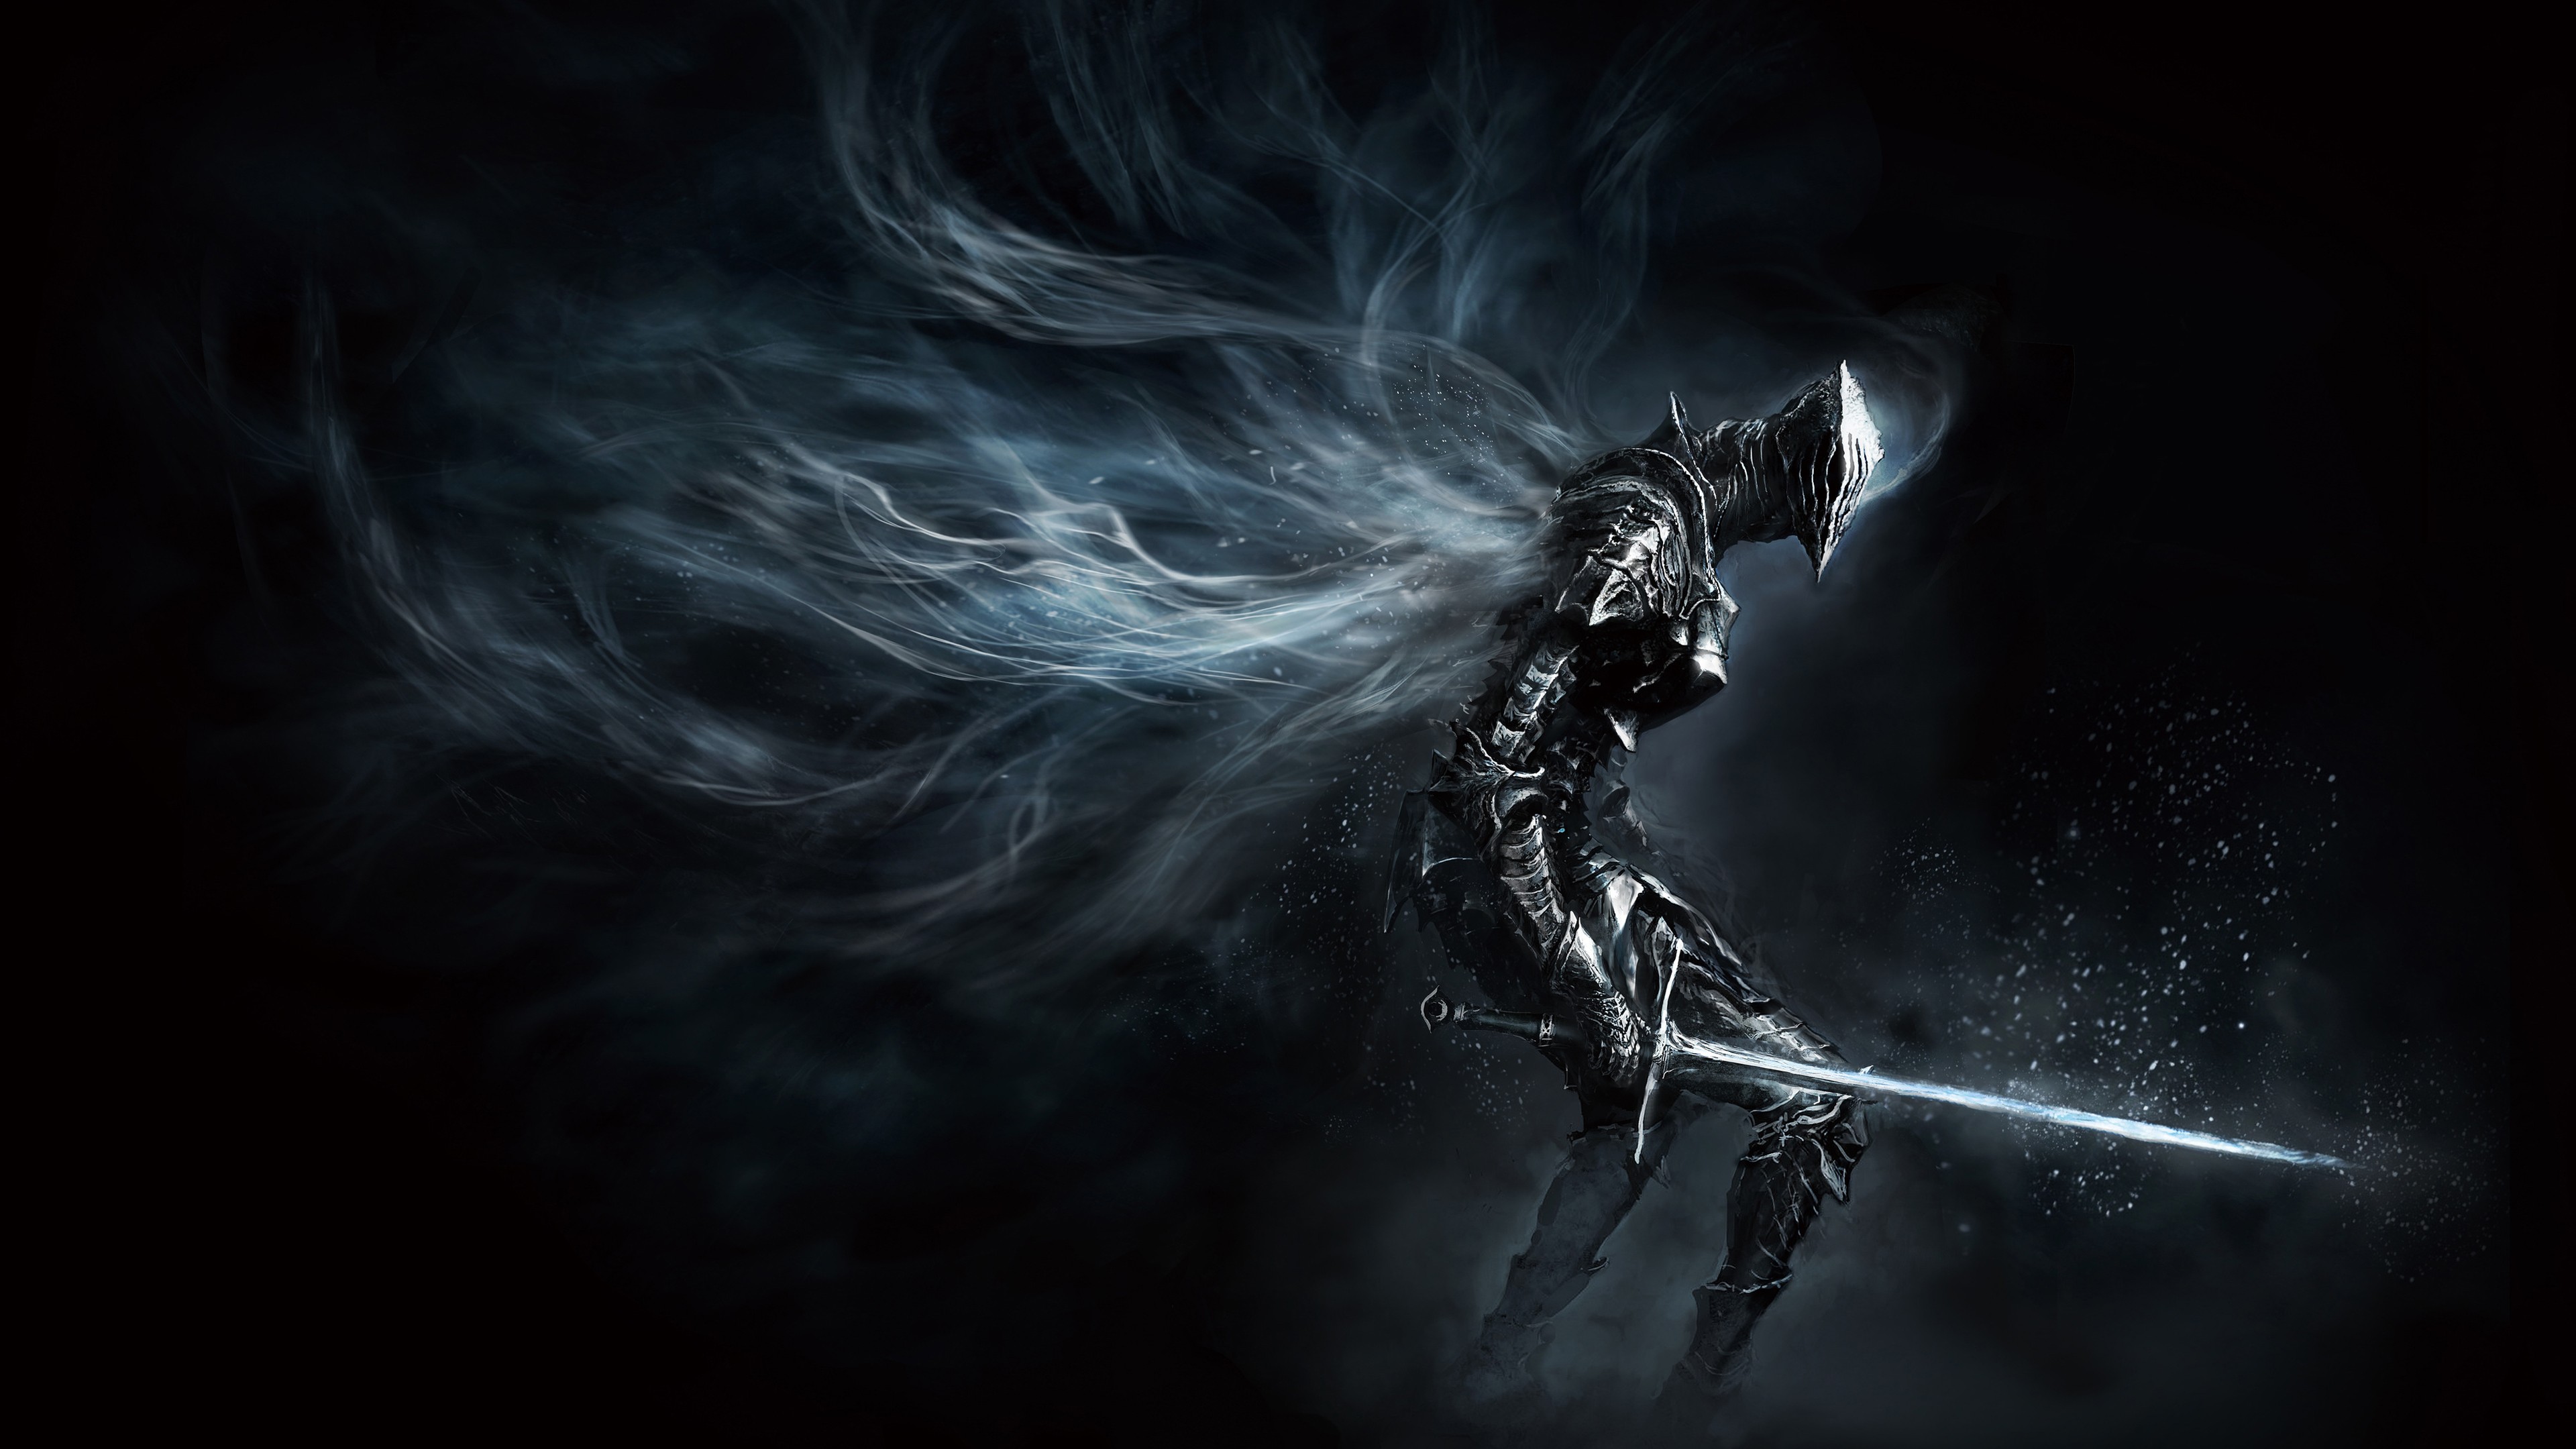 Các fan hâm mộ game Dark Souls không thể bỏ lỡ cơ hội sở hữu miễn phí hình nền 4K Dark Souls 3 đỉnh cao với độ phân giải cực cao, tạo nên hiệu ứng sống động và bắt mắt. Tải ngay để cảm nhận sự uyển chuyển giữa ánh sáng và bóng tối trong game.